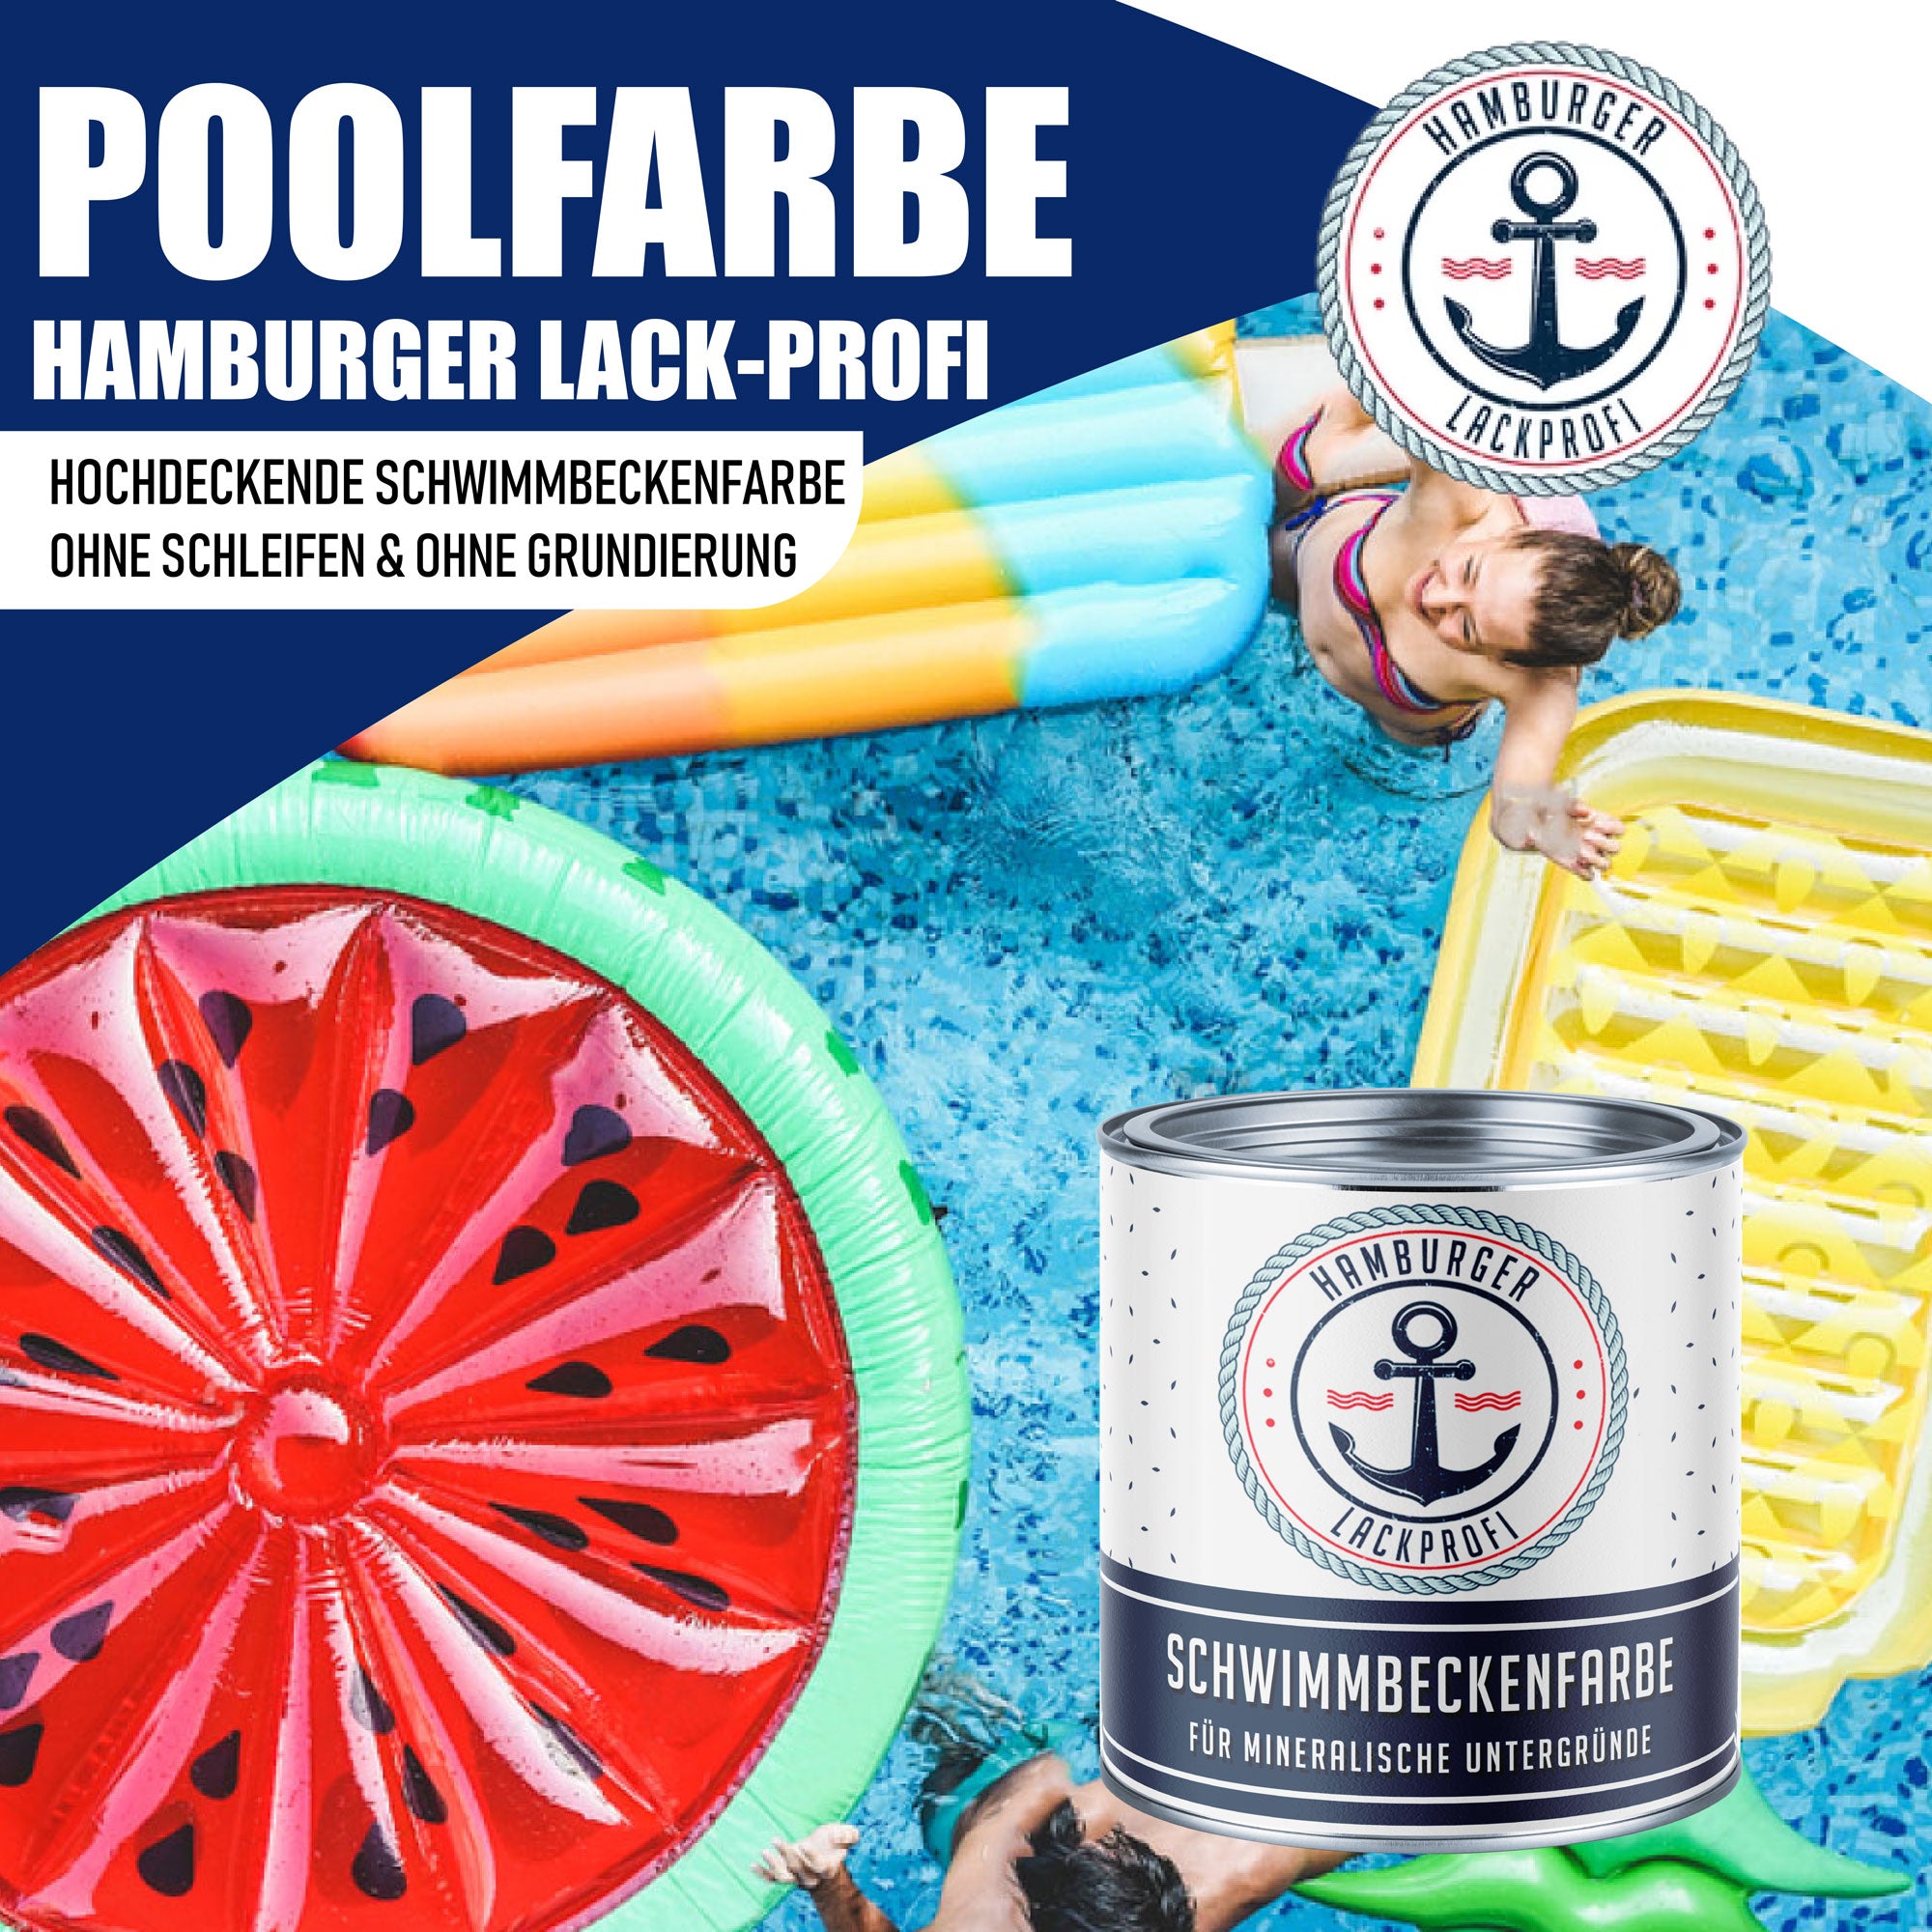 Hamburger Lack-Profi Schwimmbeckenfarbe Maisgelb RAL 1006 - hochdeckende Poolfarbe